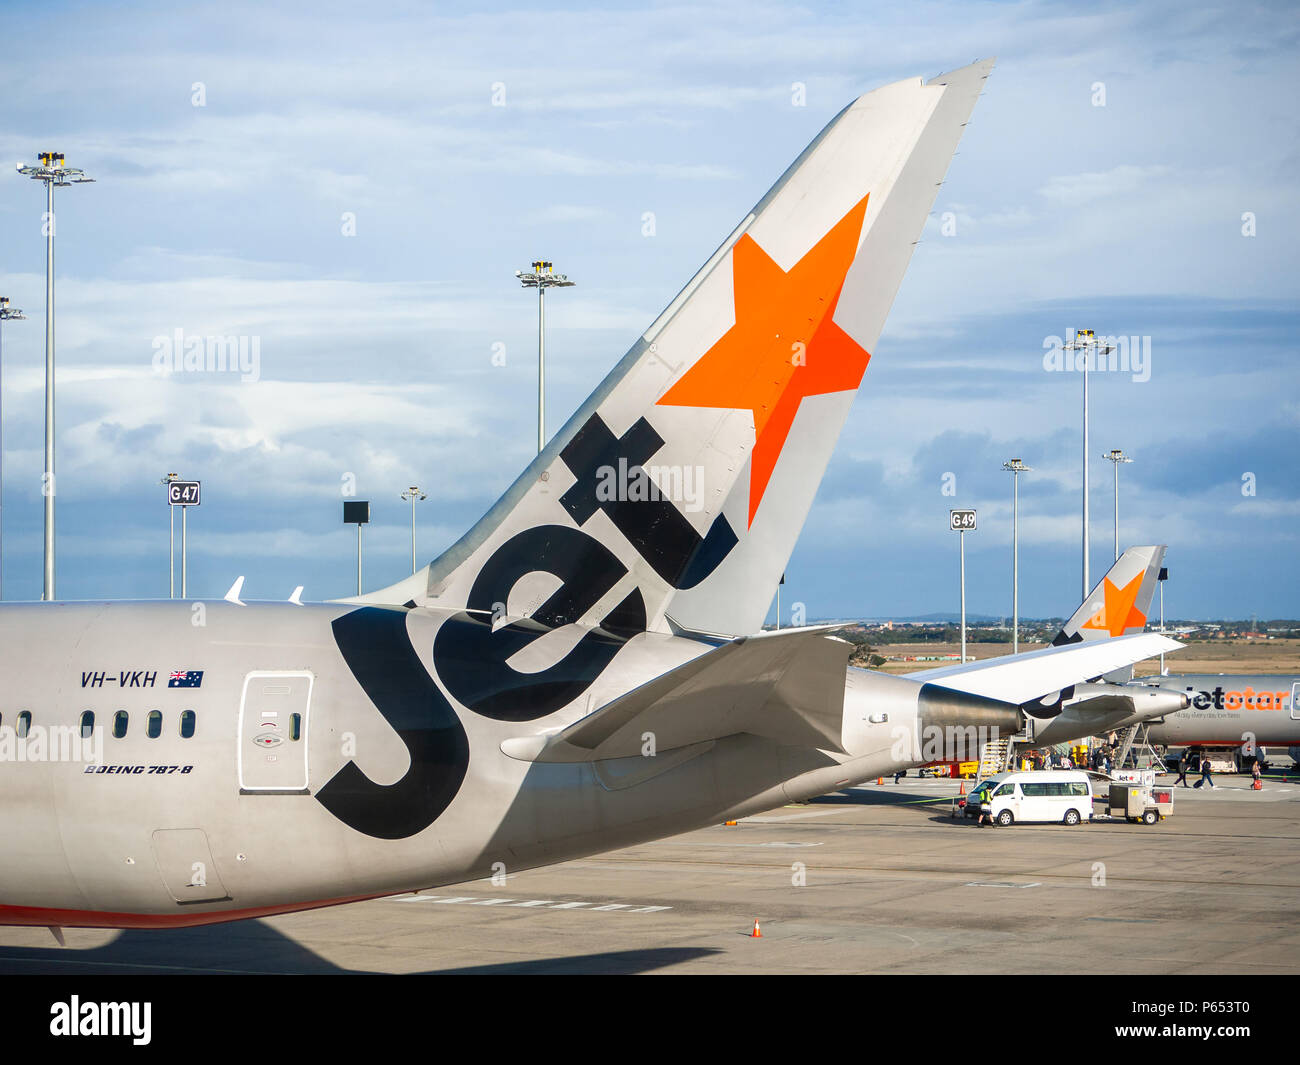 Jetstar Flugzeug in Melbourne Airport geparkt. Victoria, Australien. Jetstar ist ein australischer Low Cost Airline mit Sitz in Melbourne. Stockfoto